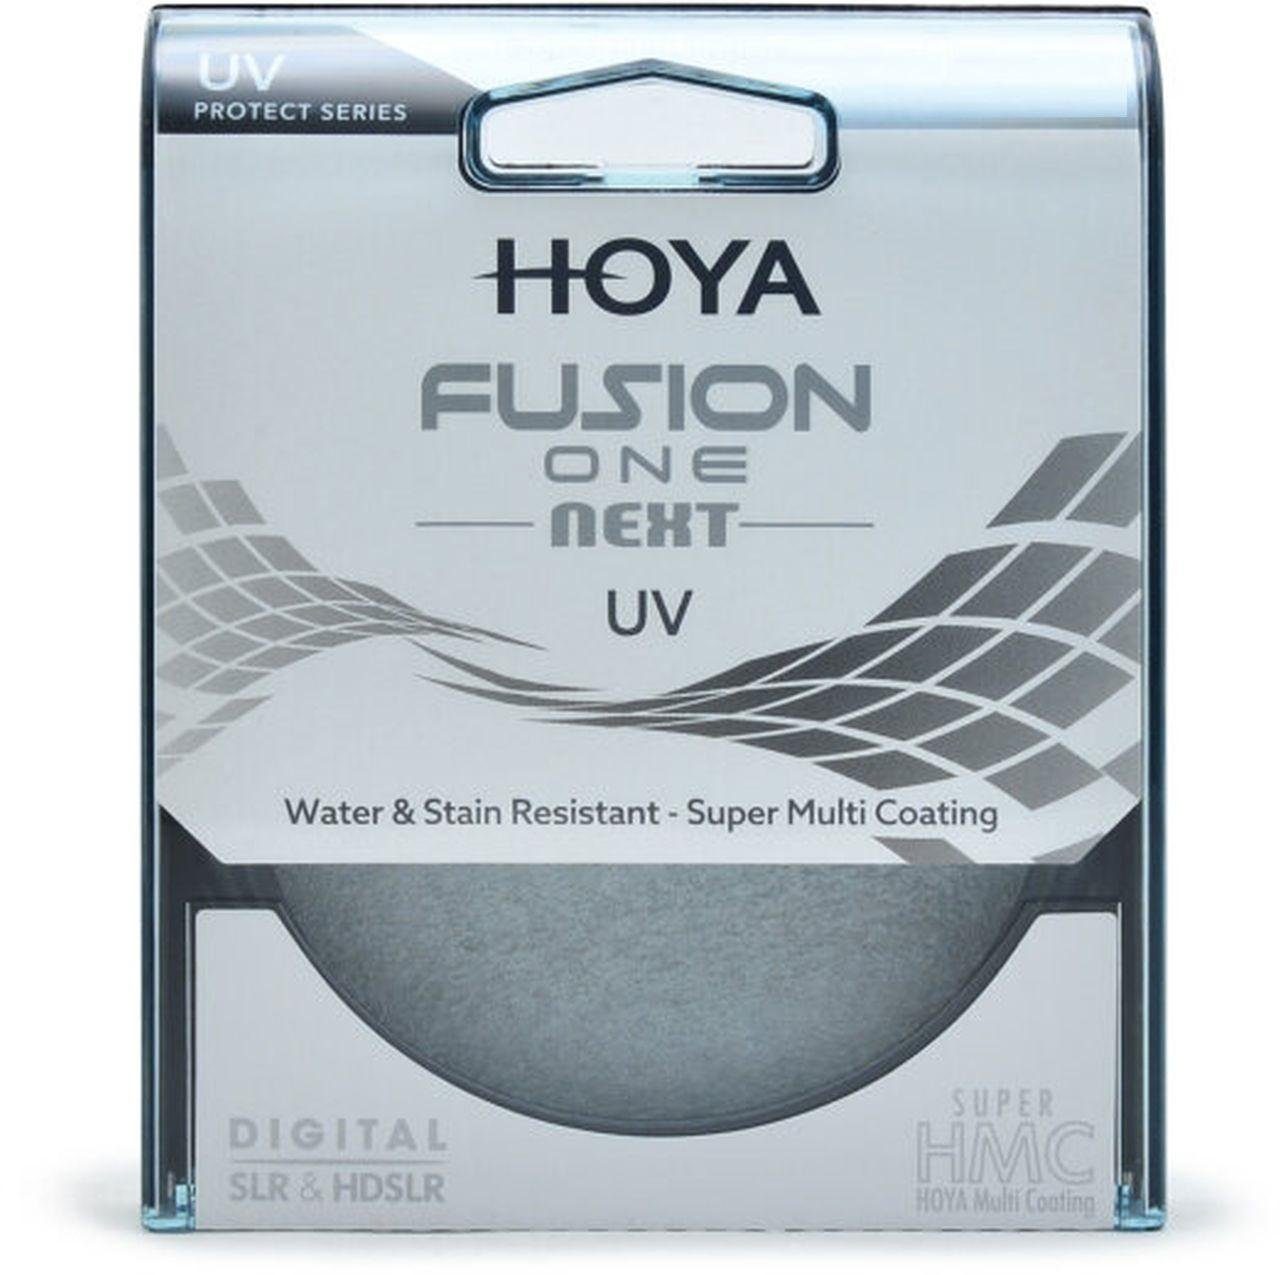 Hoya Fusion ONE Next UV-Filter 58mm Objektivzubehör